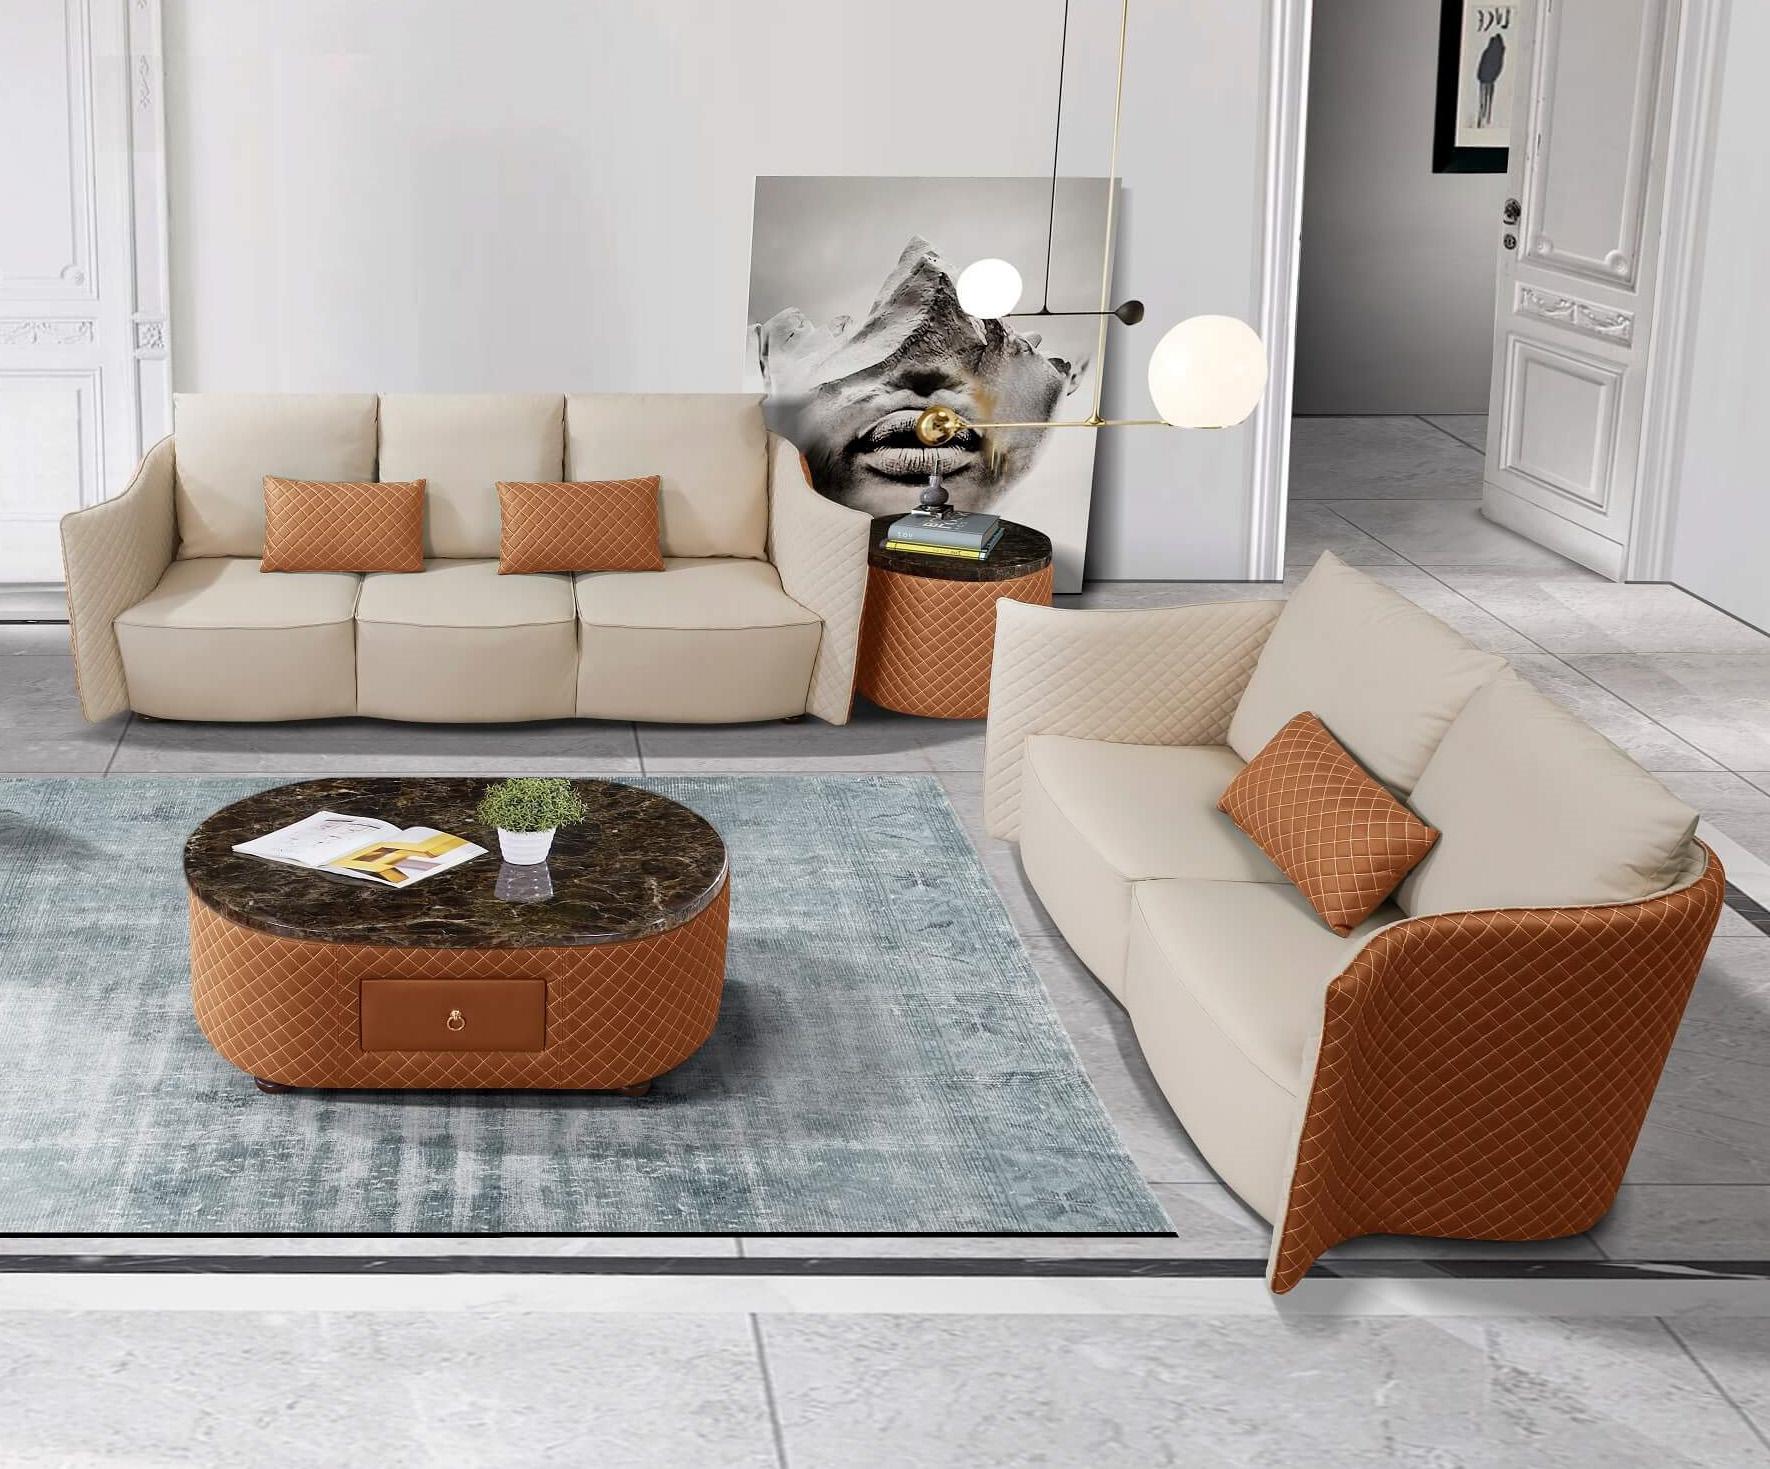 

    
Luxury Italian Leather Beige & Orange Sofa Set 2 Pcs MAKASSAR EUROPEAN FURNITURE
